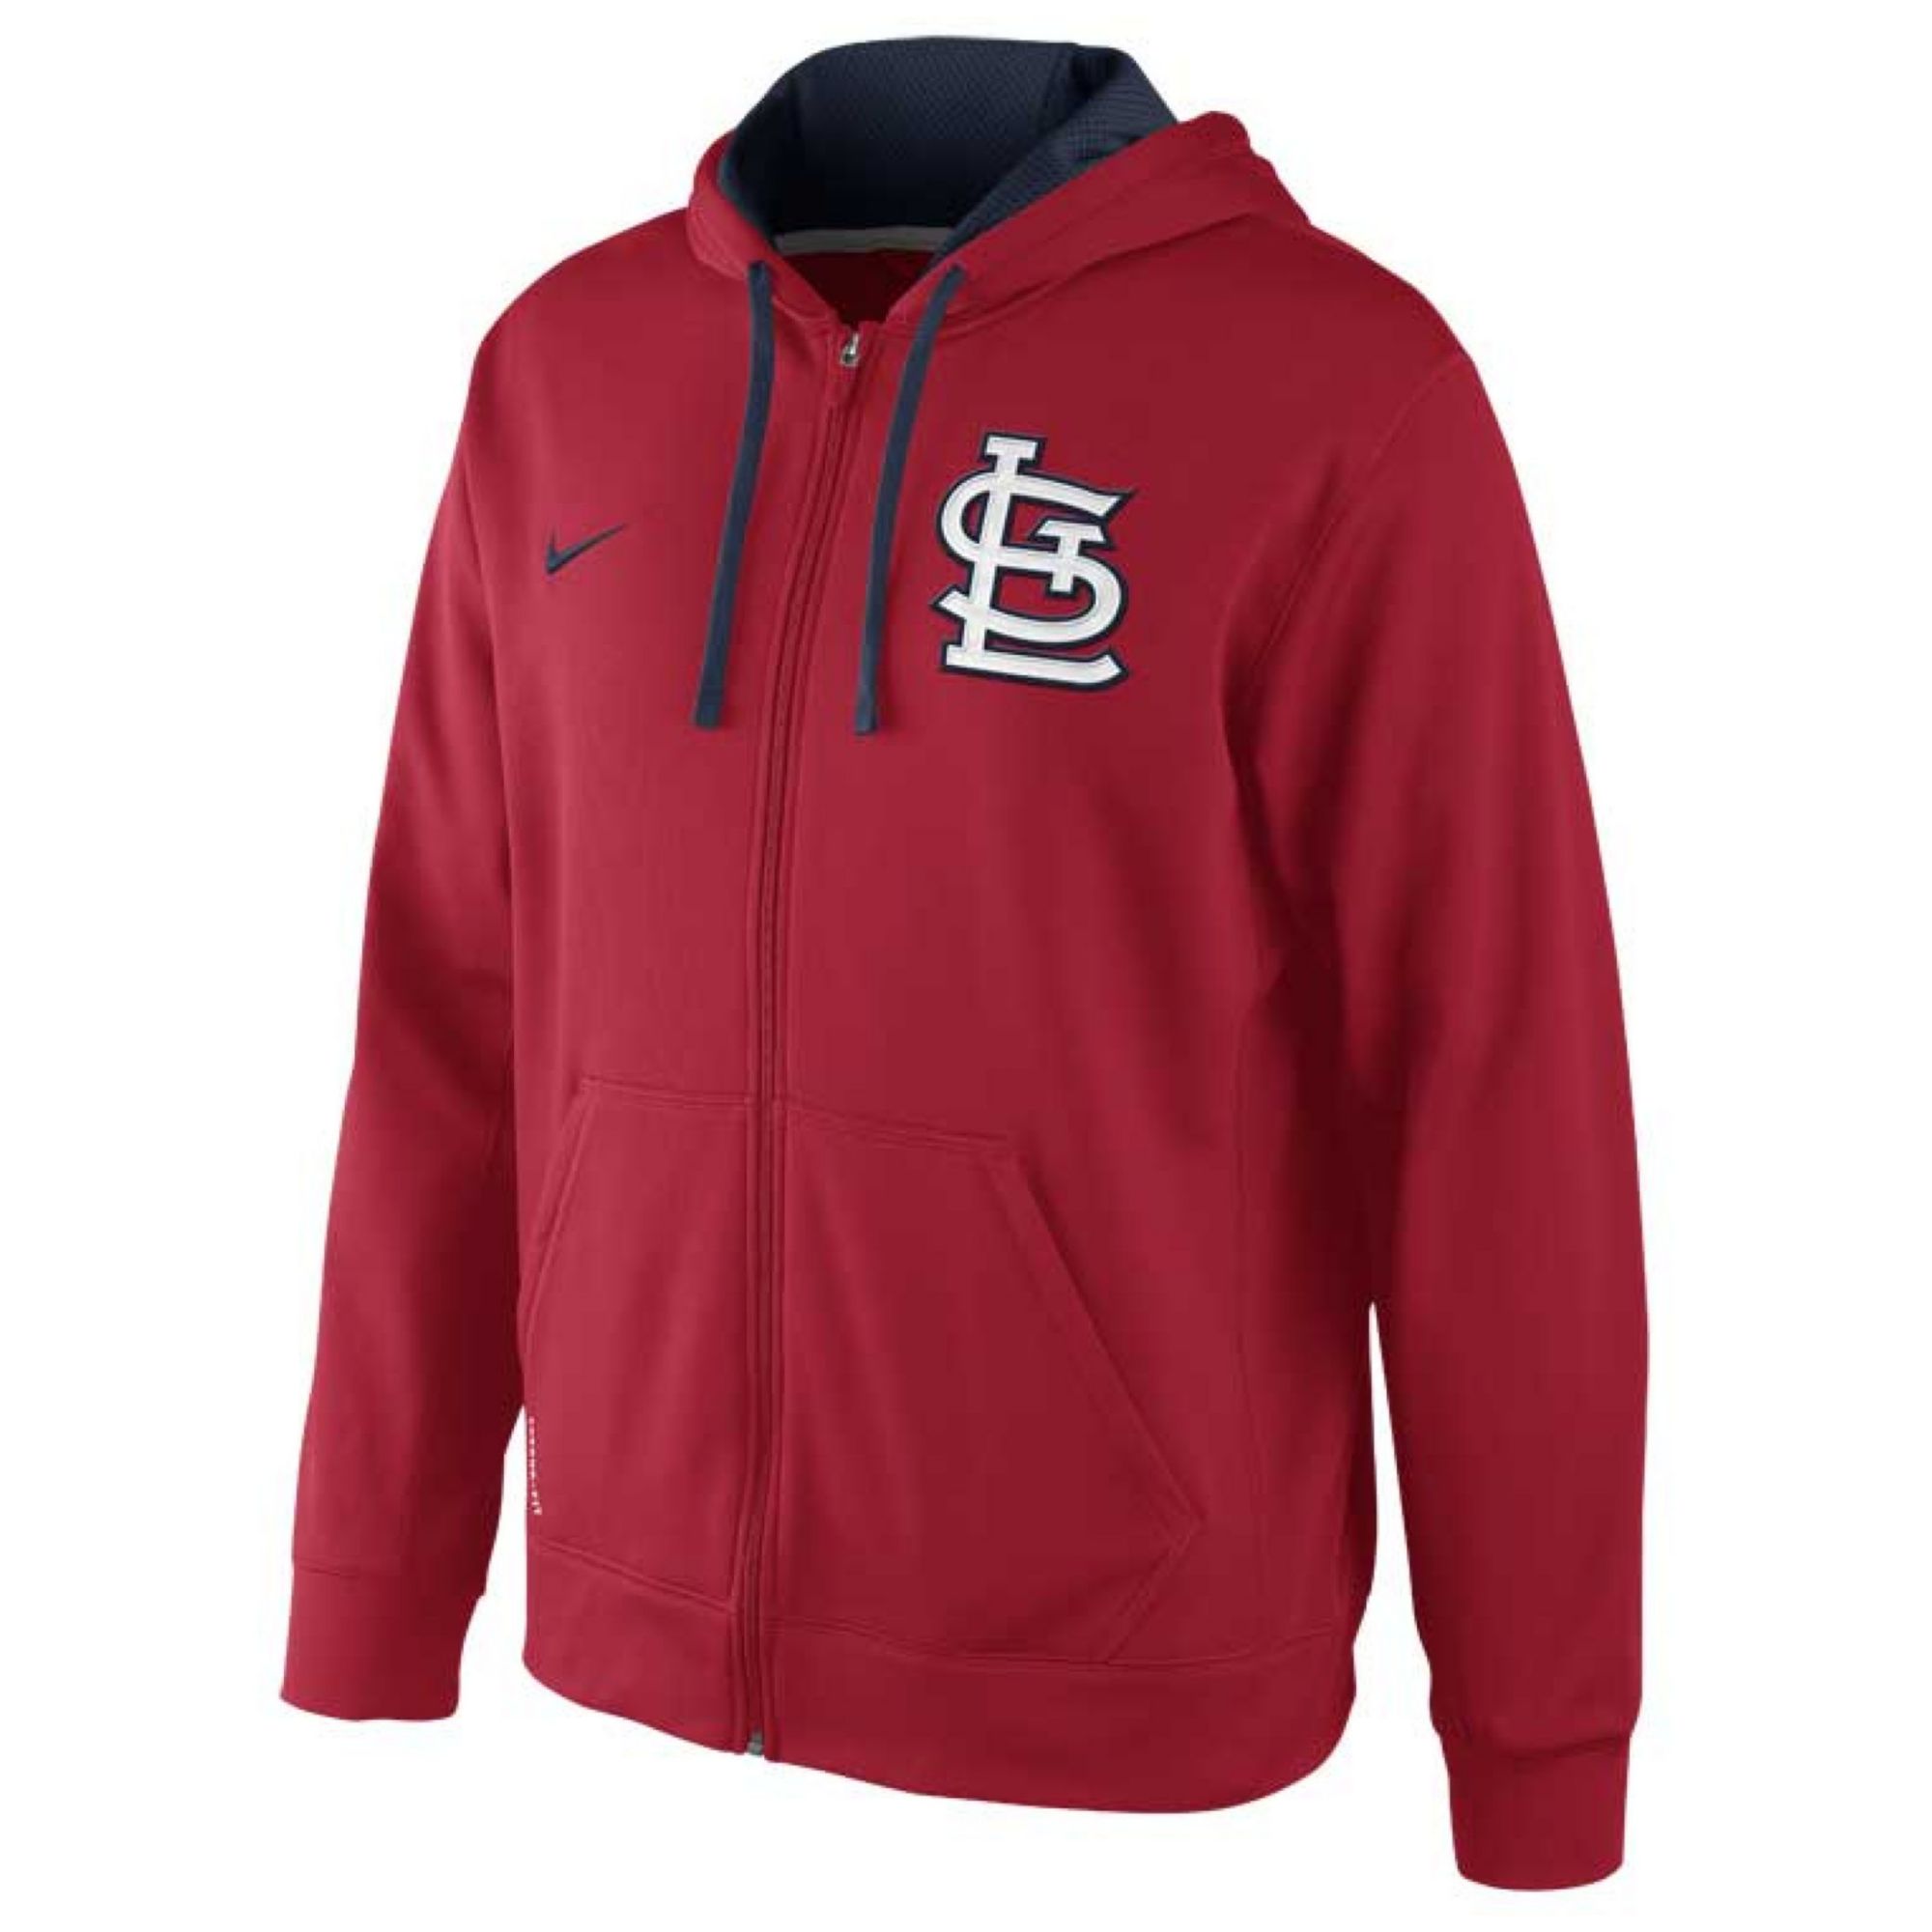 Nike Mens St Louis Cardinals Thermafit Fullzip Hoodie Sweatshirt in Red ...